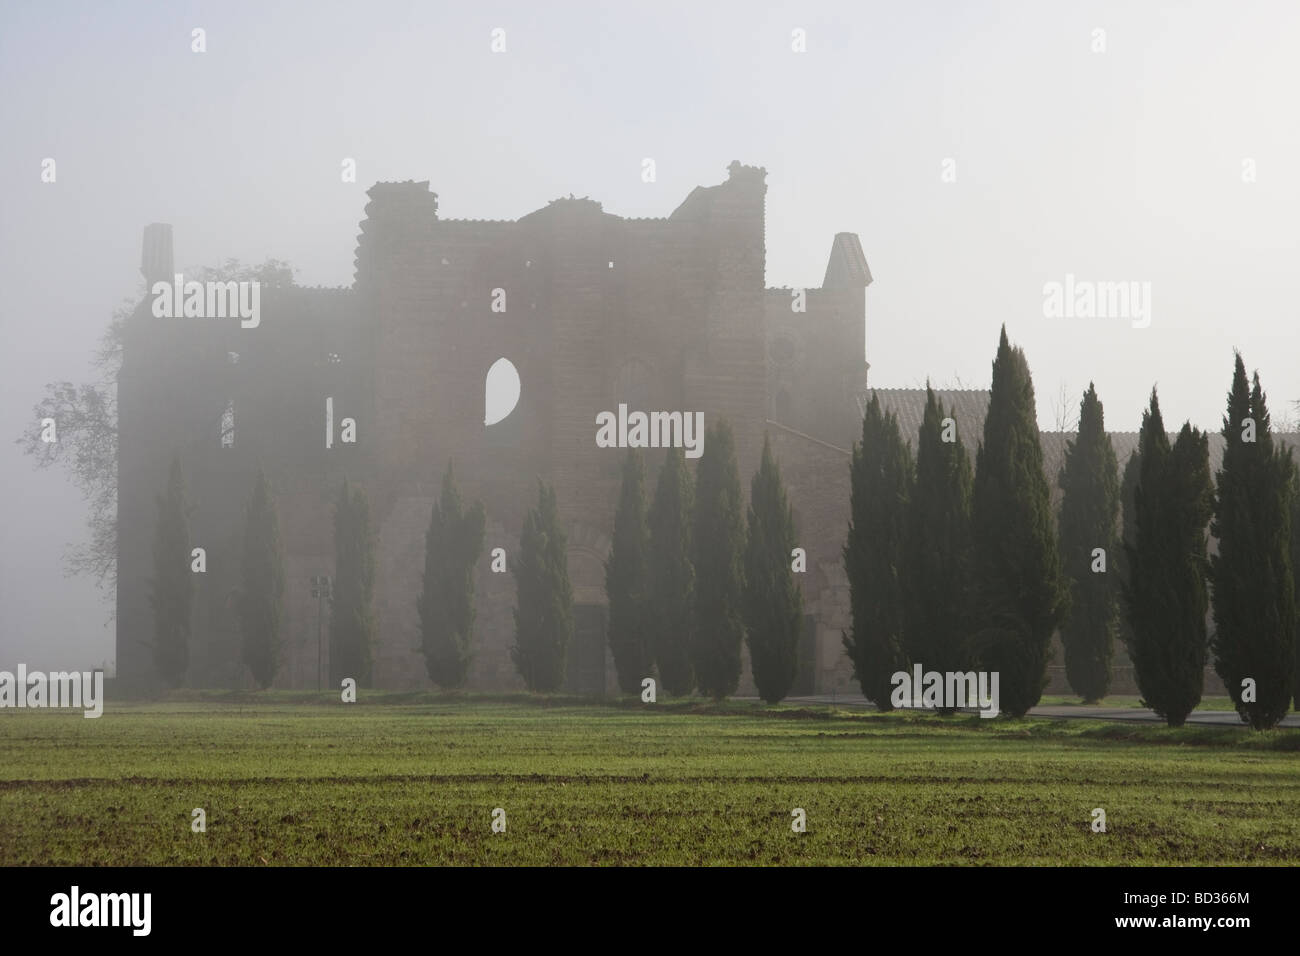 The abbey of San Galgano in Tuscany Italy in foggy morning Stock Photo